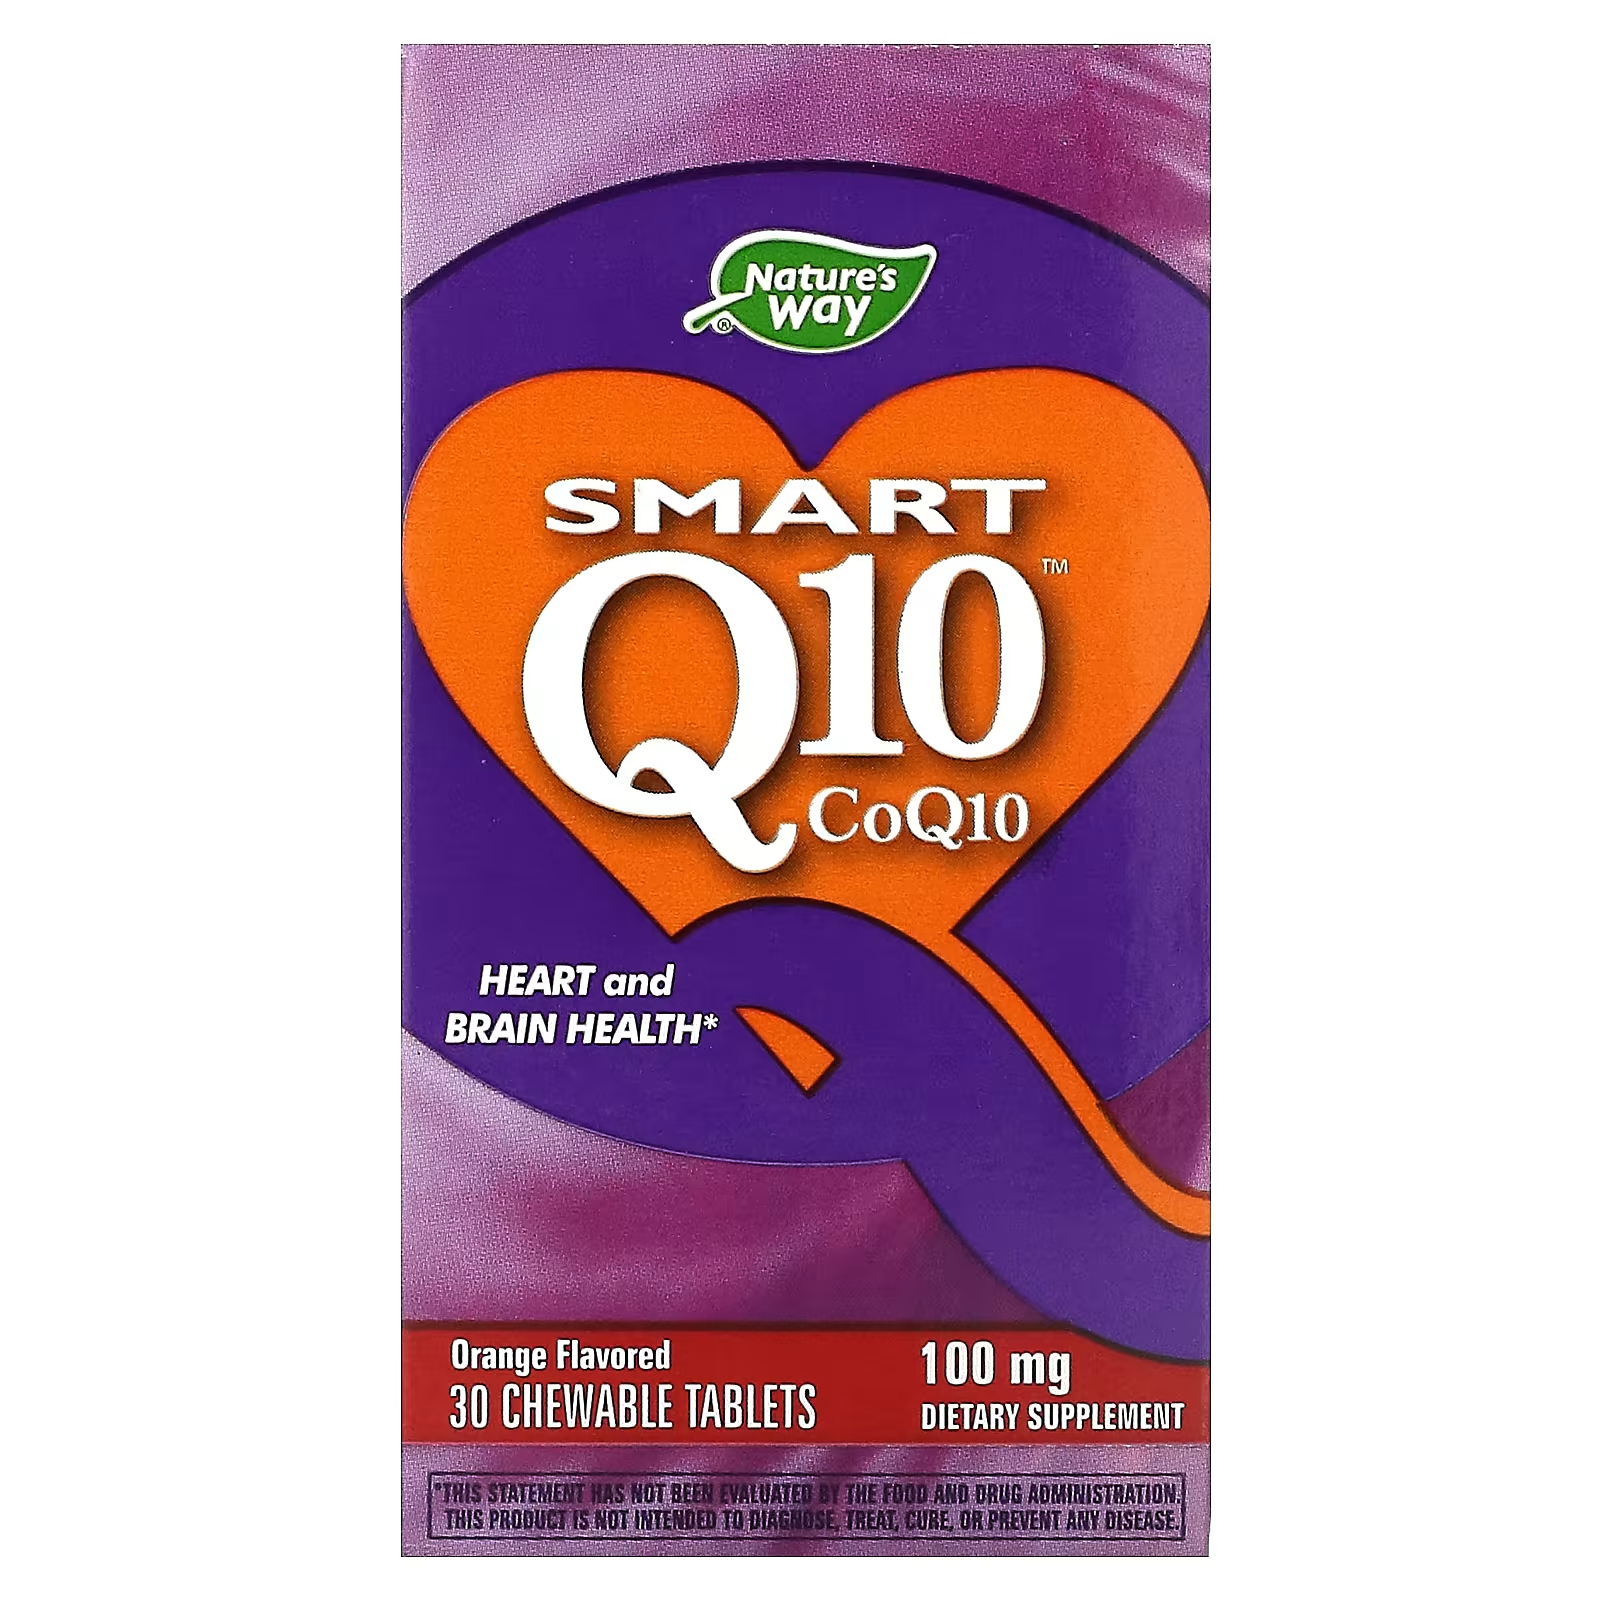 Пищевая добавка Nature's Way Smart Q10 апельсин 100 мг, 30 жевательных таблеток пищевая добавка nature s way smart q10 апельсин 100 мг 30 жевательных таблеток